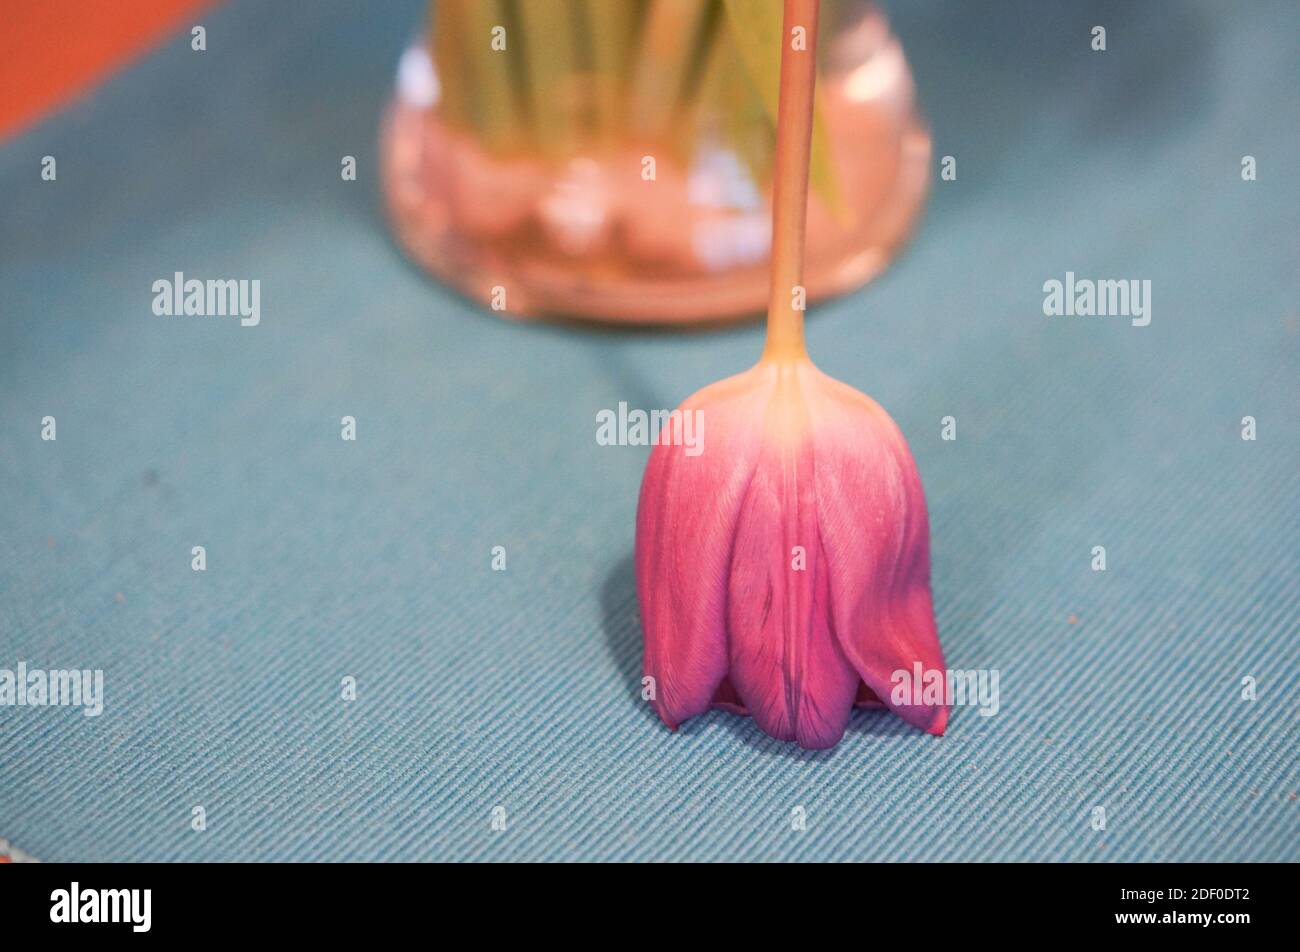 Photo d'une tulipe rose à l'envers sur une surface texturée Photo Stock -  Alamy